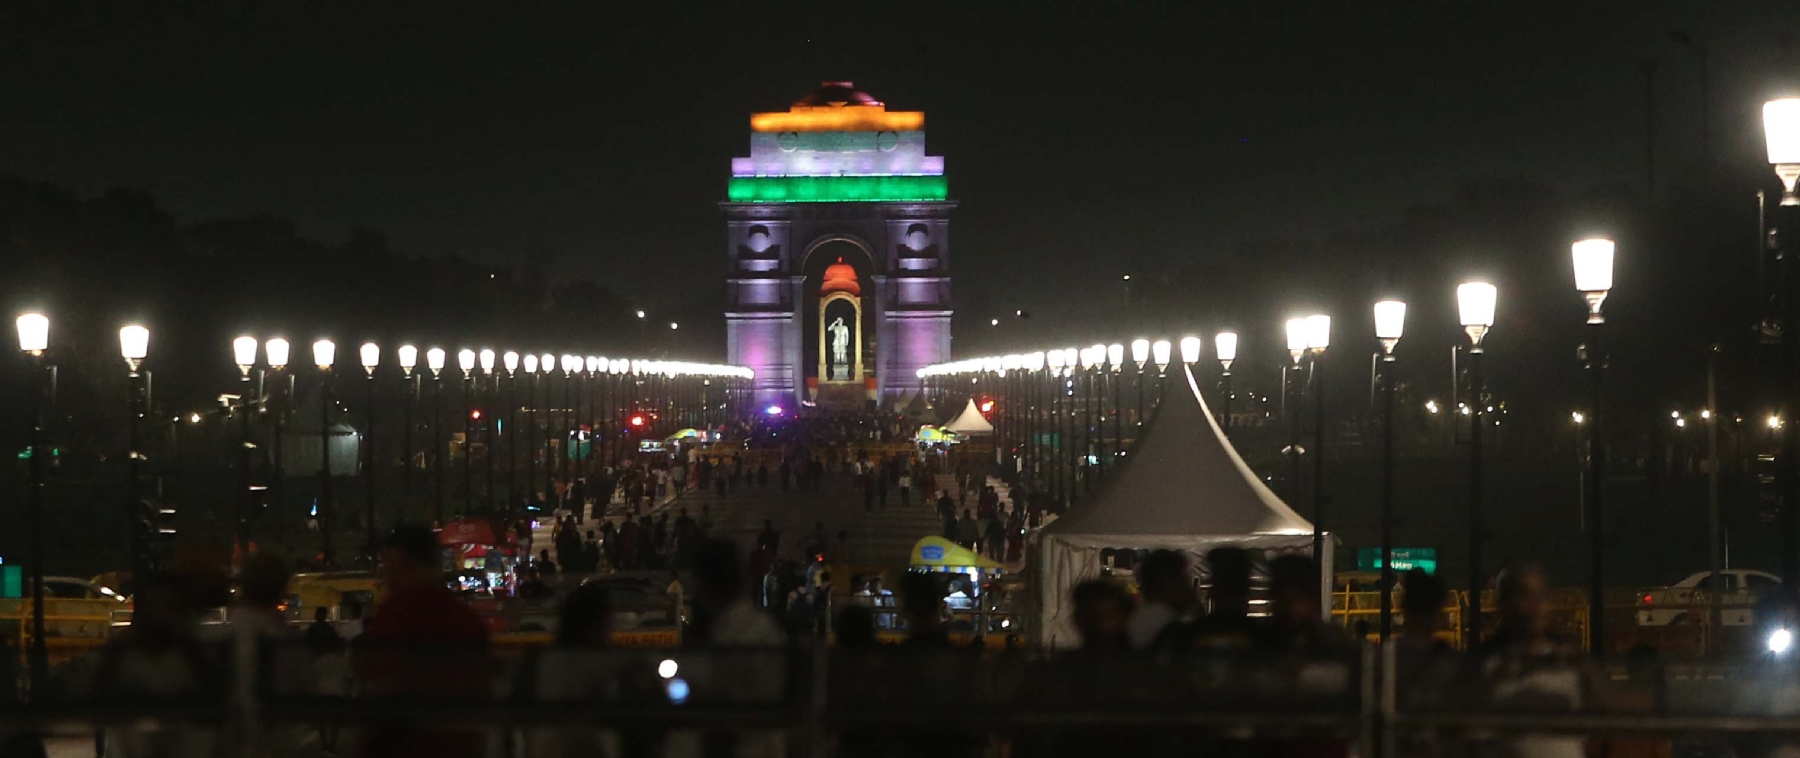 नई दिल्ली में सोमवार 14 अगस्त को 77वें स्वतंत्रता दिवस की पूर्व संध्या में रायसीना हिल्स राष्ट्रीय ध्वज के रंगों से जगमगा उठी। हिन्दुस्थान समाचार/ फोटो गणेश बिष्ट